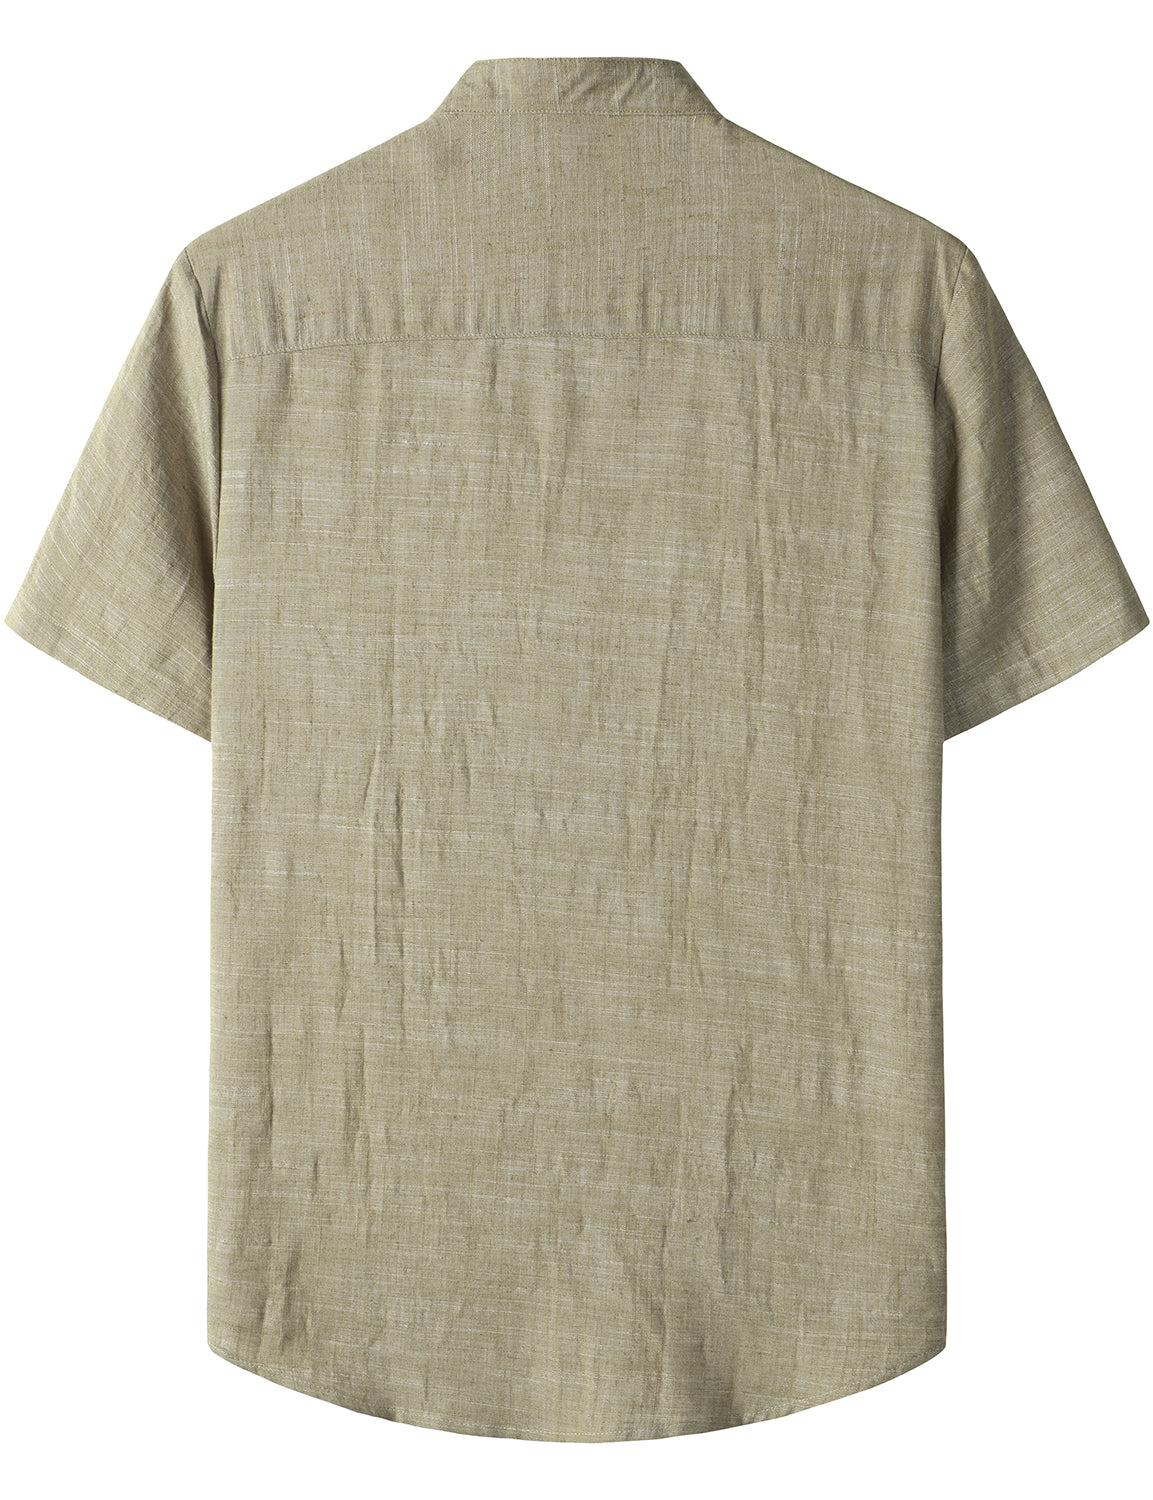 JOGAL Men's Cotton Linen Henley Shirt Short Sleeve Casual Botton Down Hawaiian Beach Shirts